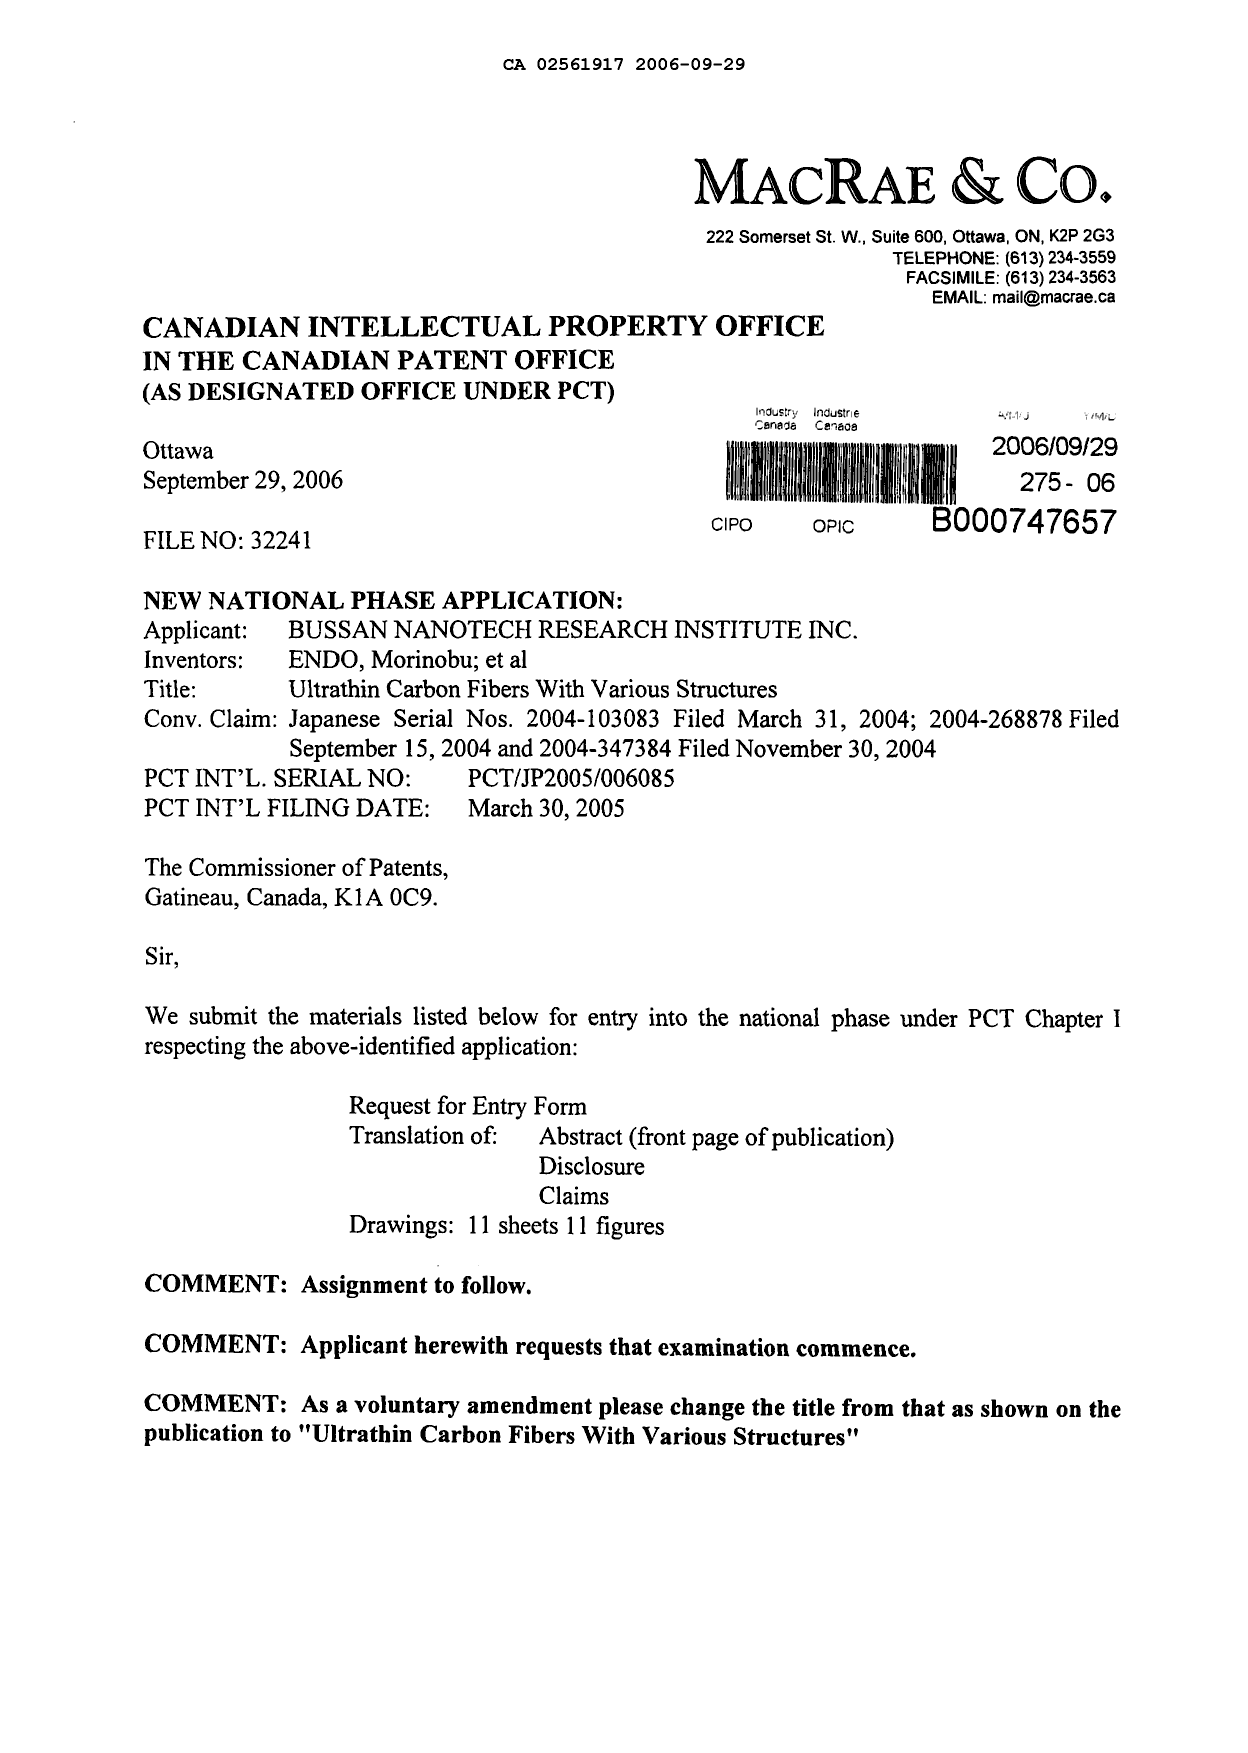 Document de brevet canadien 2561917. Poursuite-Amendment 20060929. Image 1 de 2